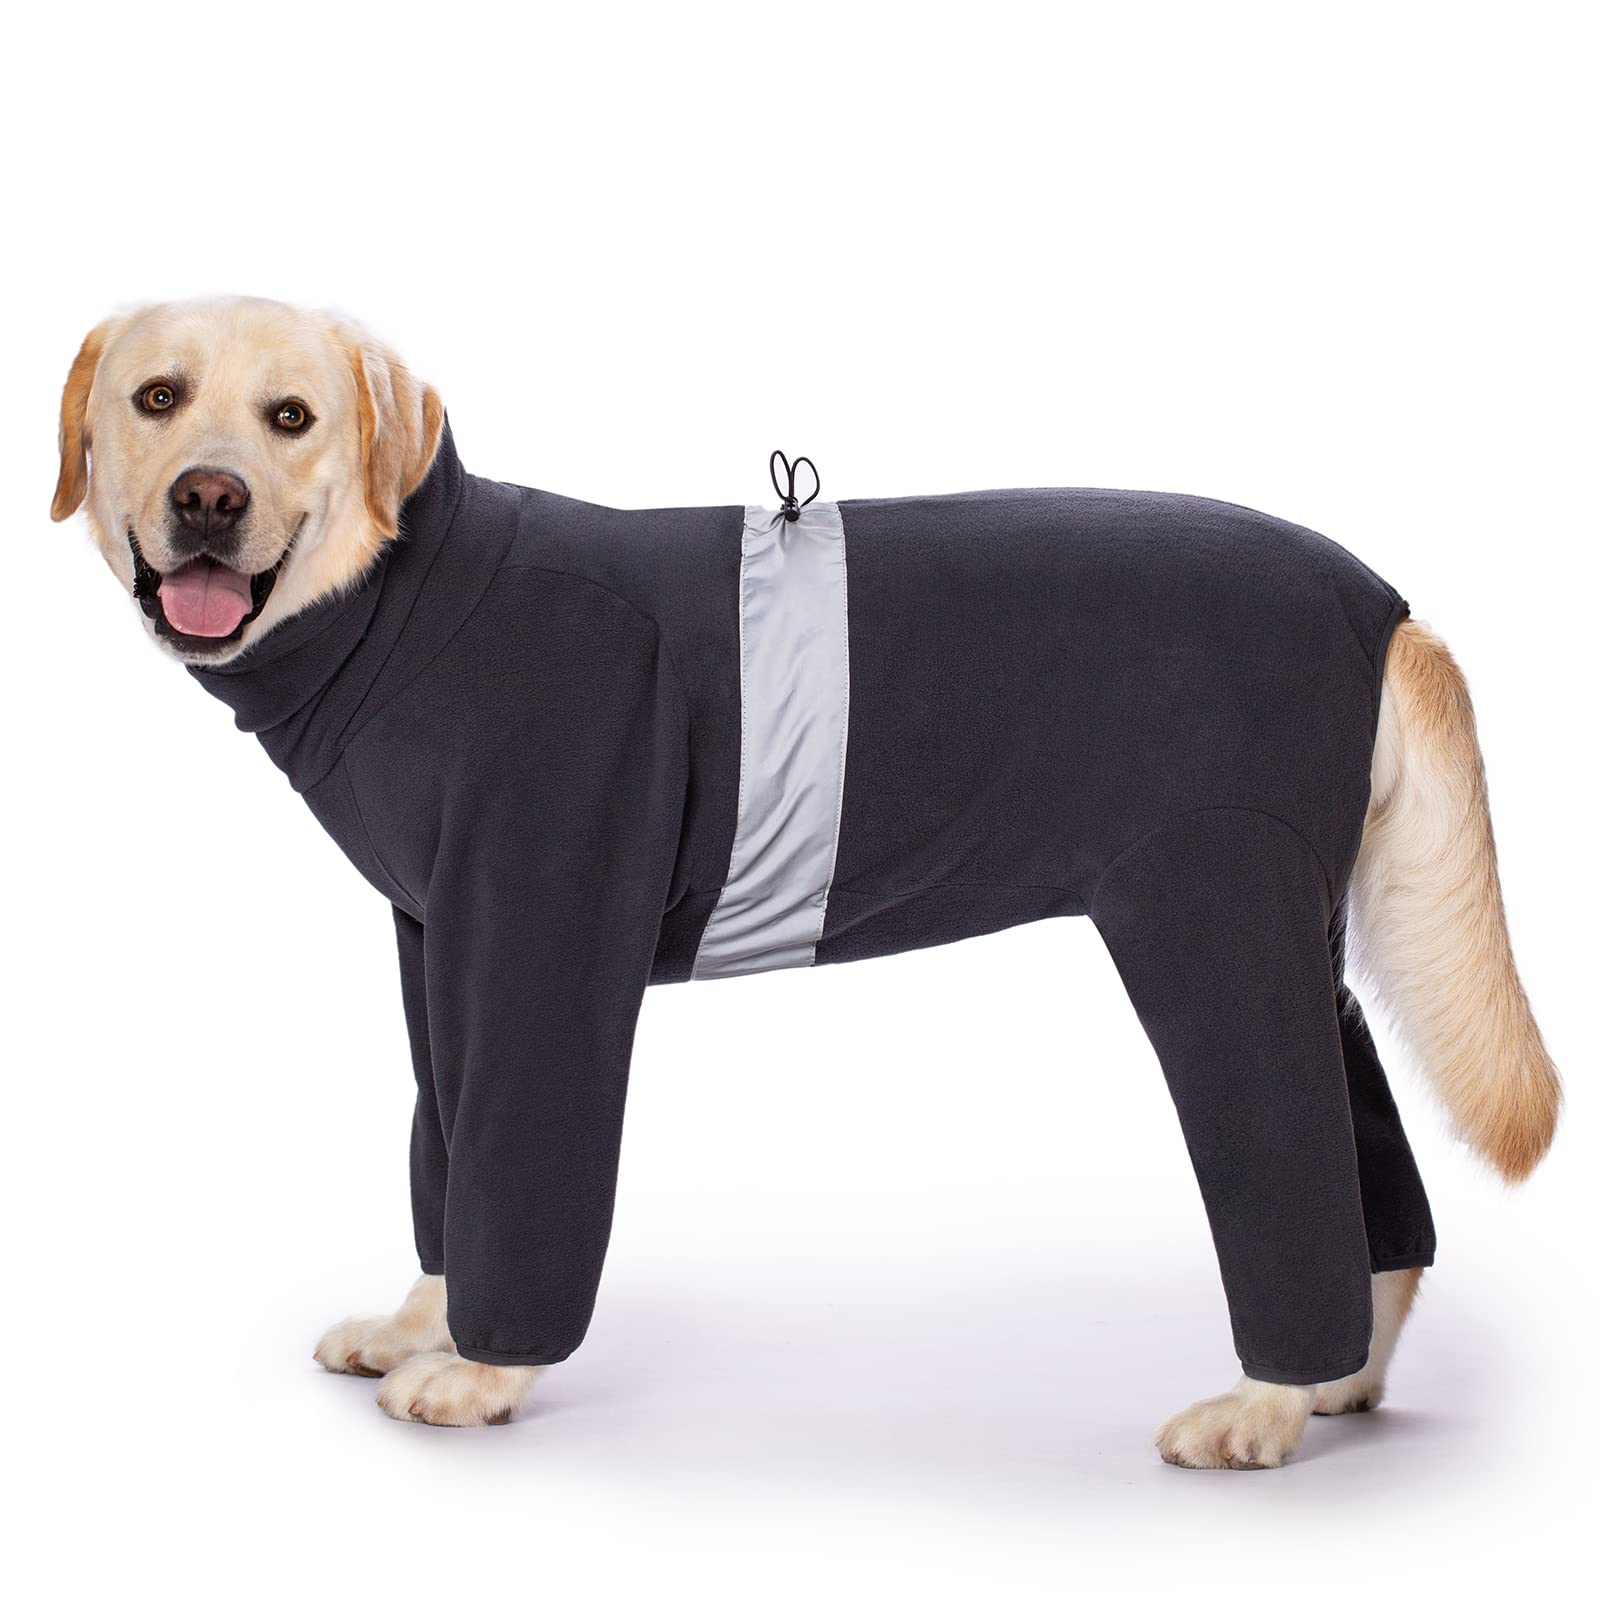 Miaododo Polarfleece-Hundekleidung für den Winter für mittelgroße und große Hunde, Thermo-Hundejacke, Einteiler für Jungen oder Mädchen, Reißverschluss auf der Rückseite (26, Dunkelgrau)